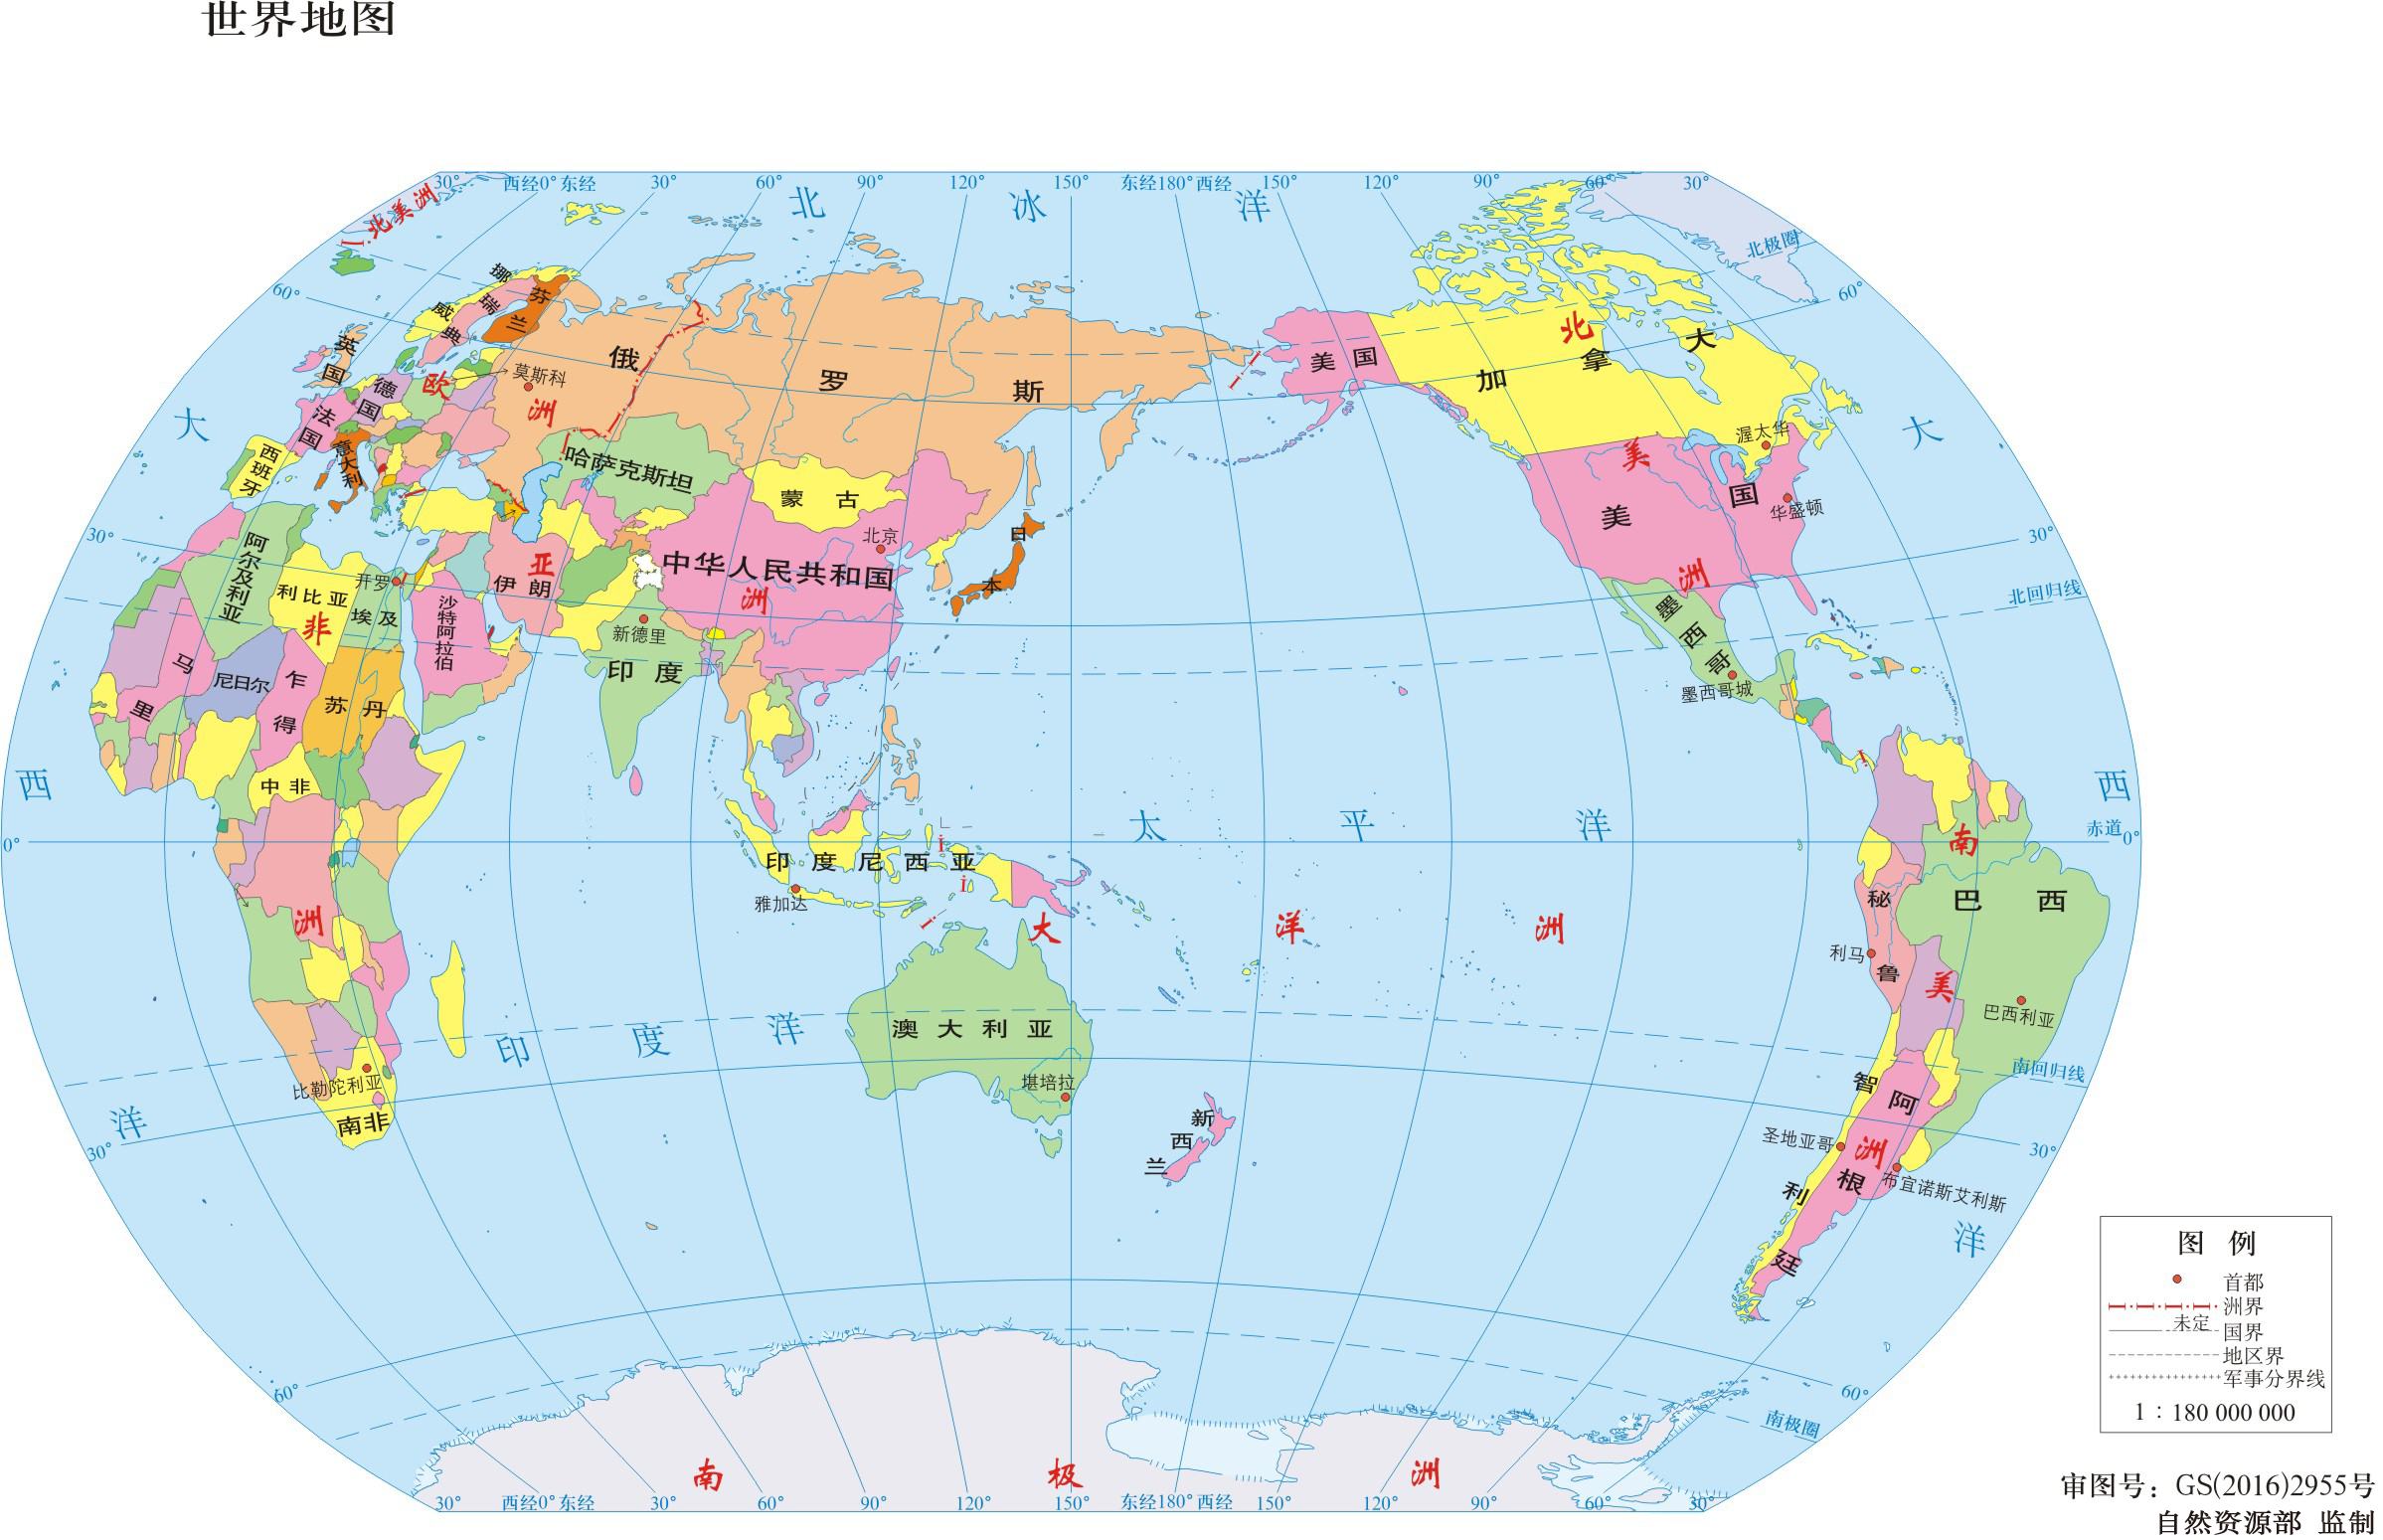 大家在日常生活中应该见过各种各样的地图:世界地图,中国地图,城市的